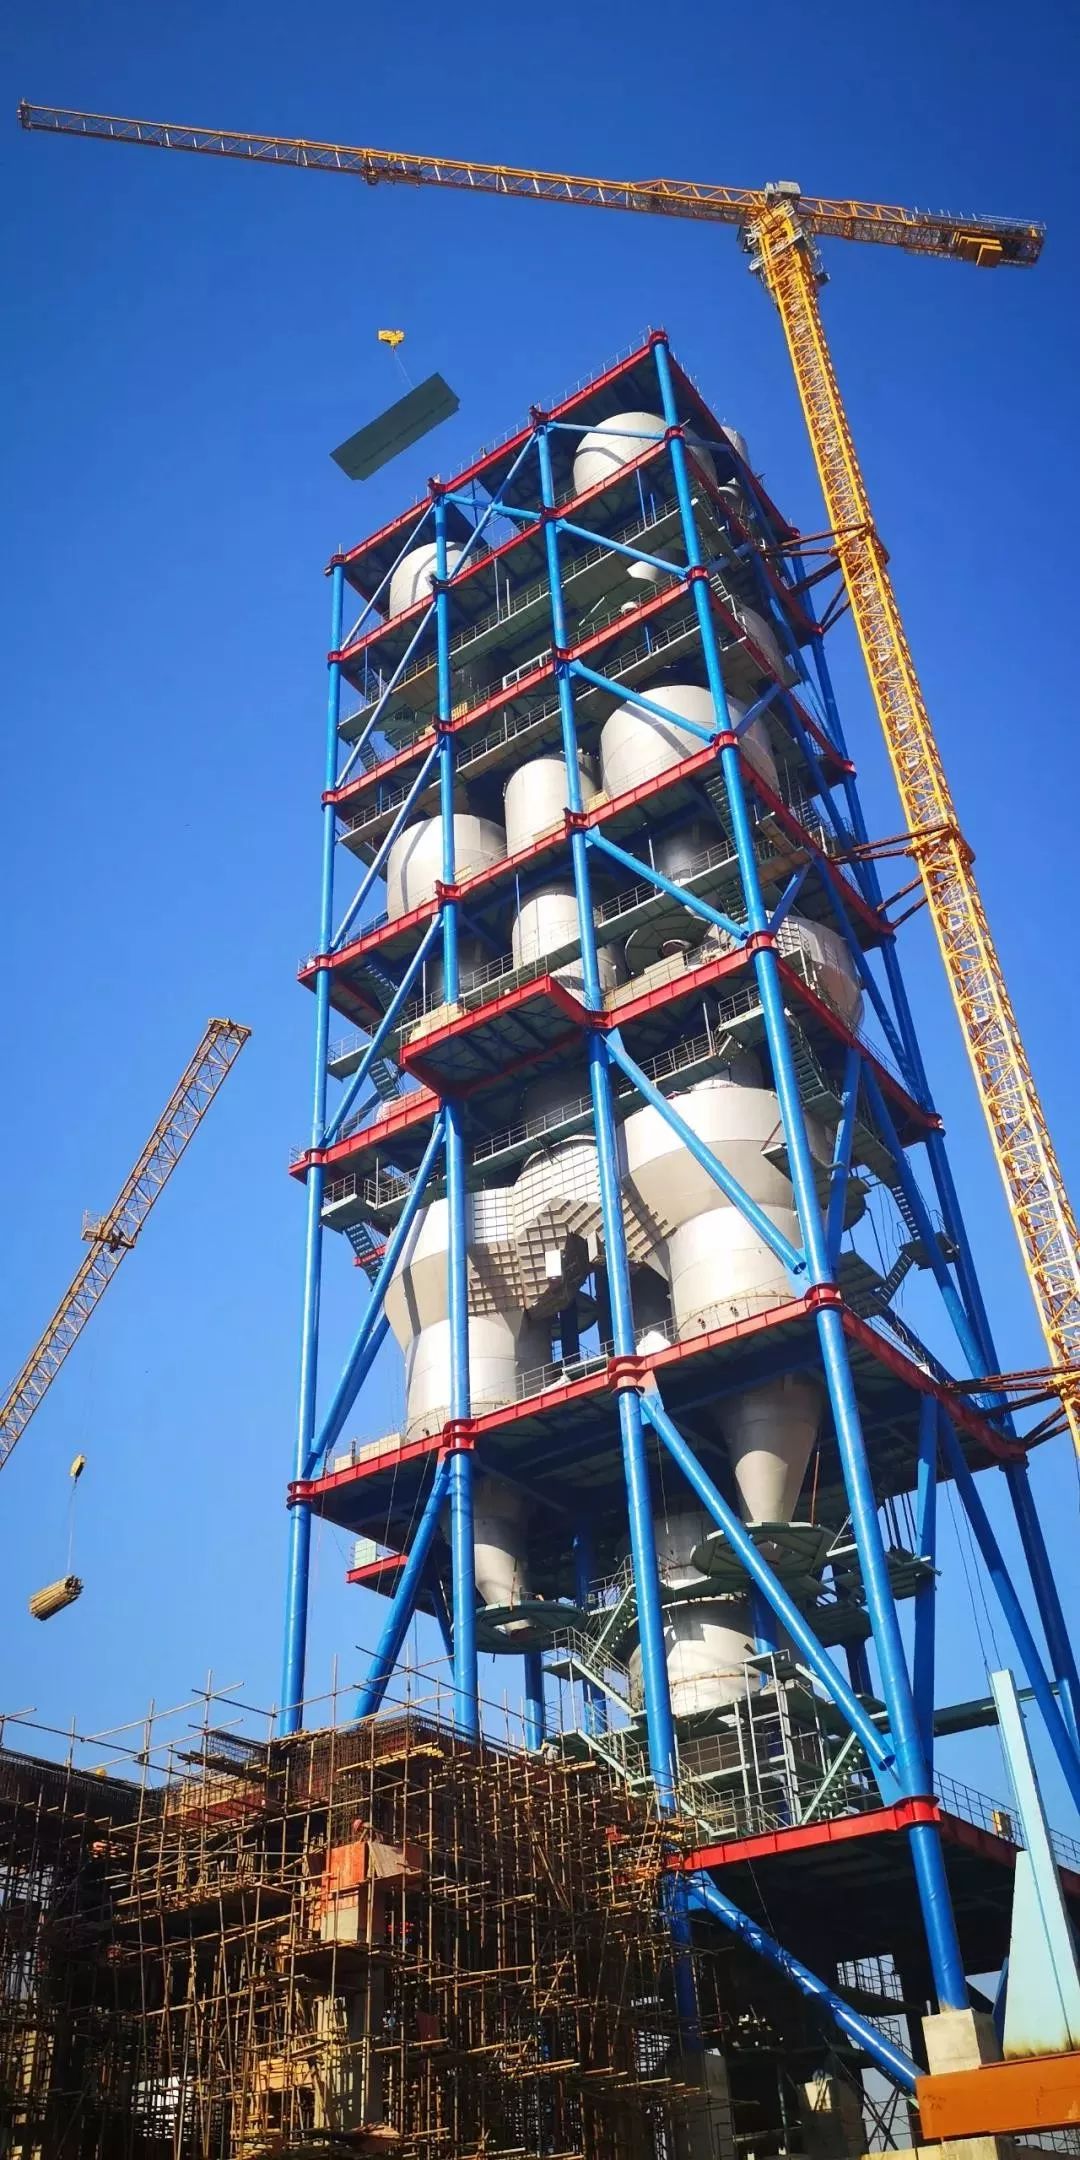 回转窑窑尾是项目建设中的最高建筑,主要包括预热器,分解炉等大型设备